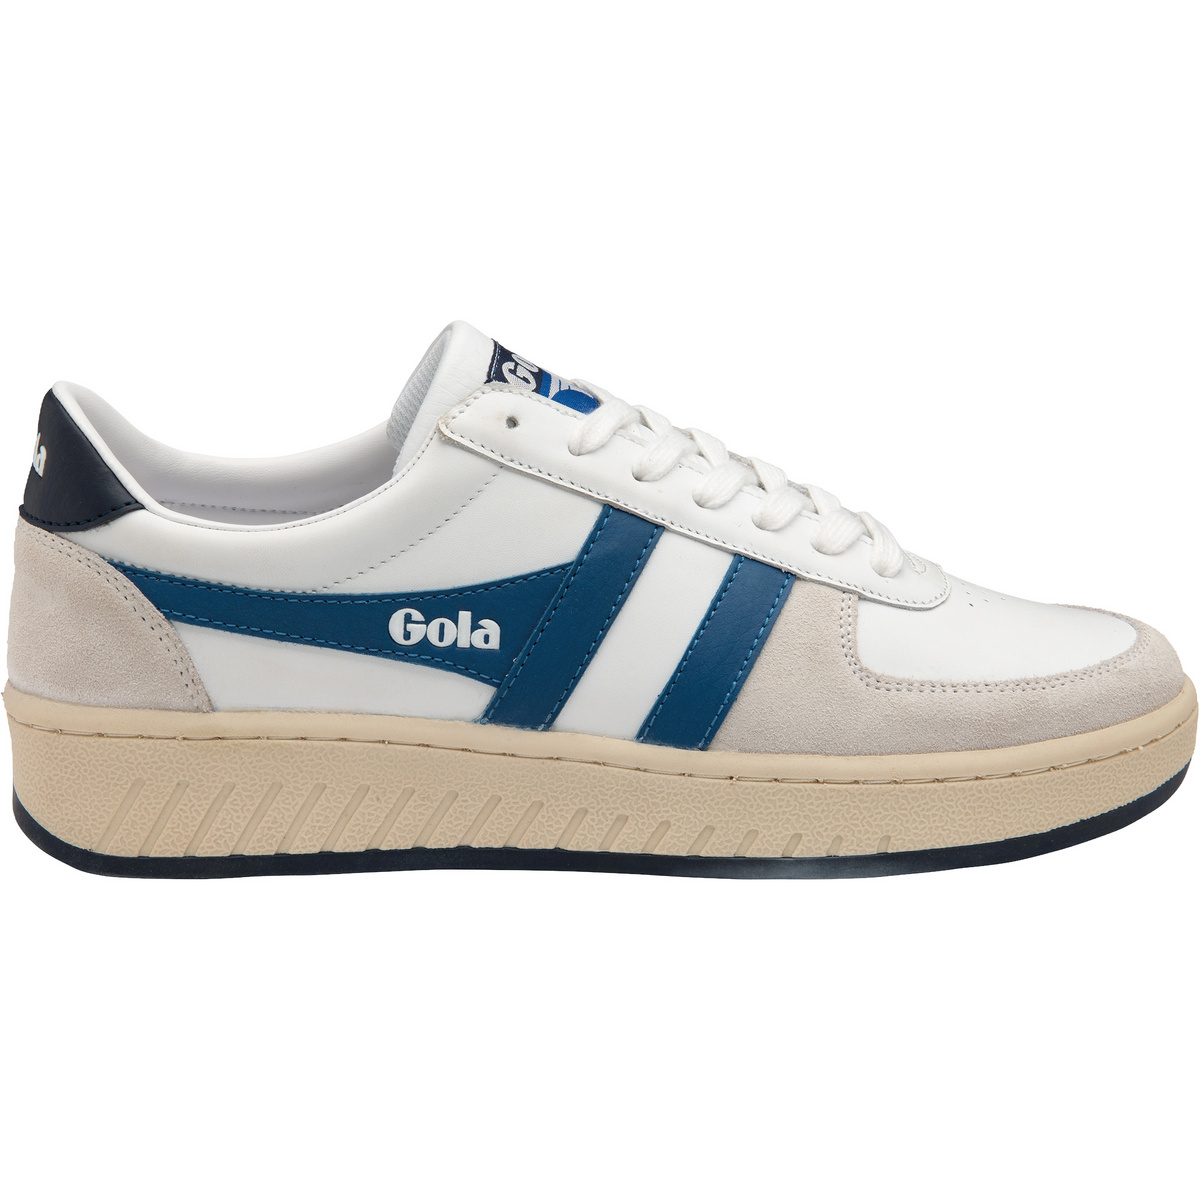 Gola Herren Grandslam Classic Schuhe (Größe 41, weiss)